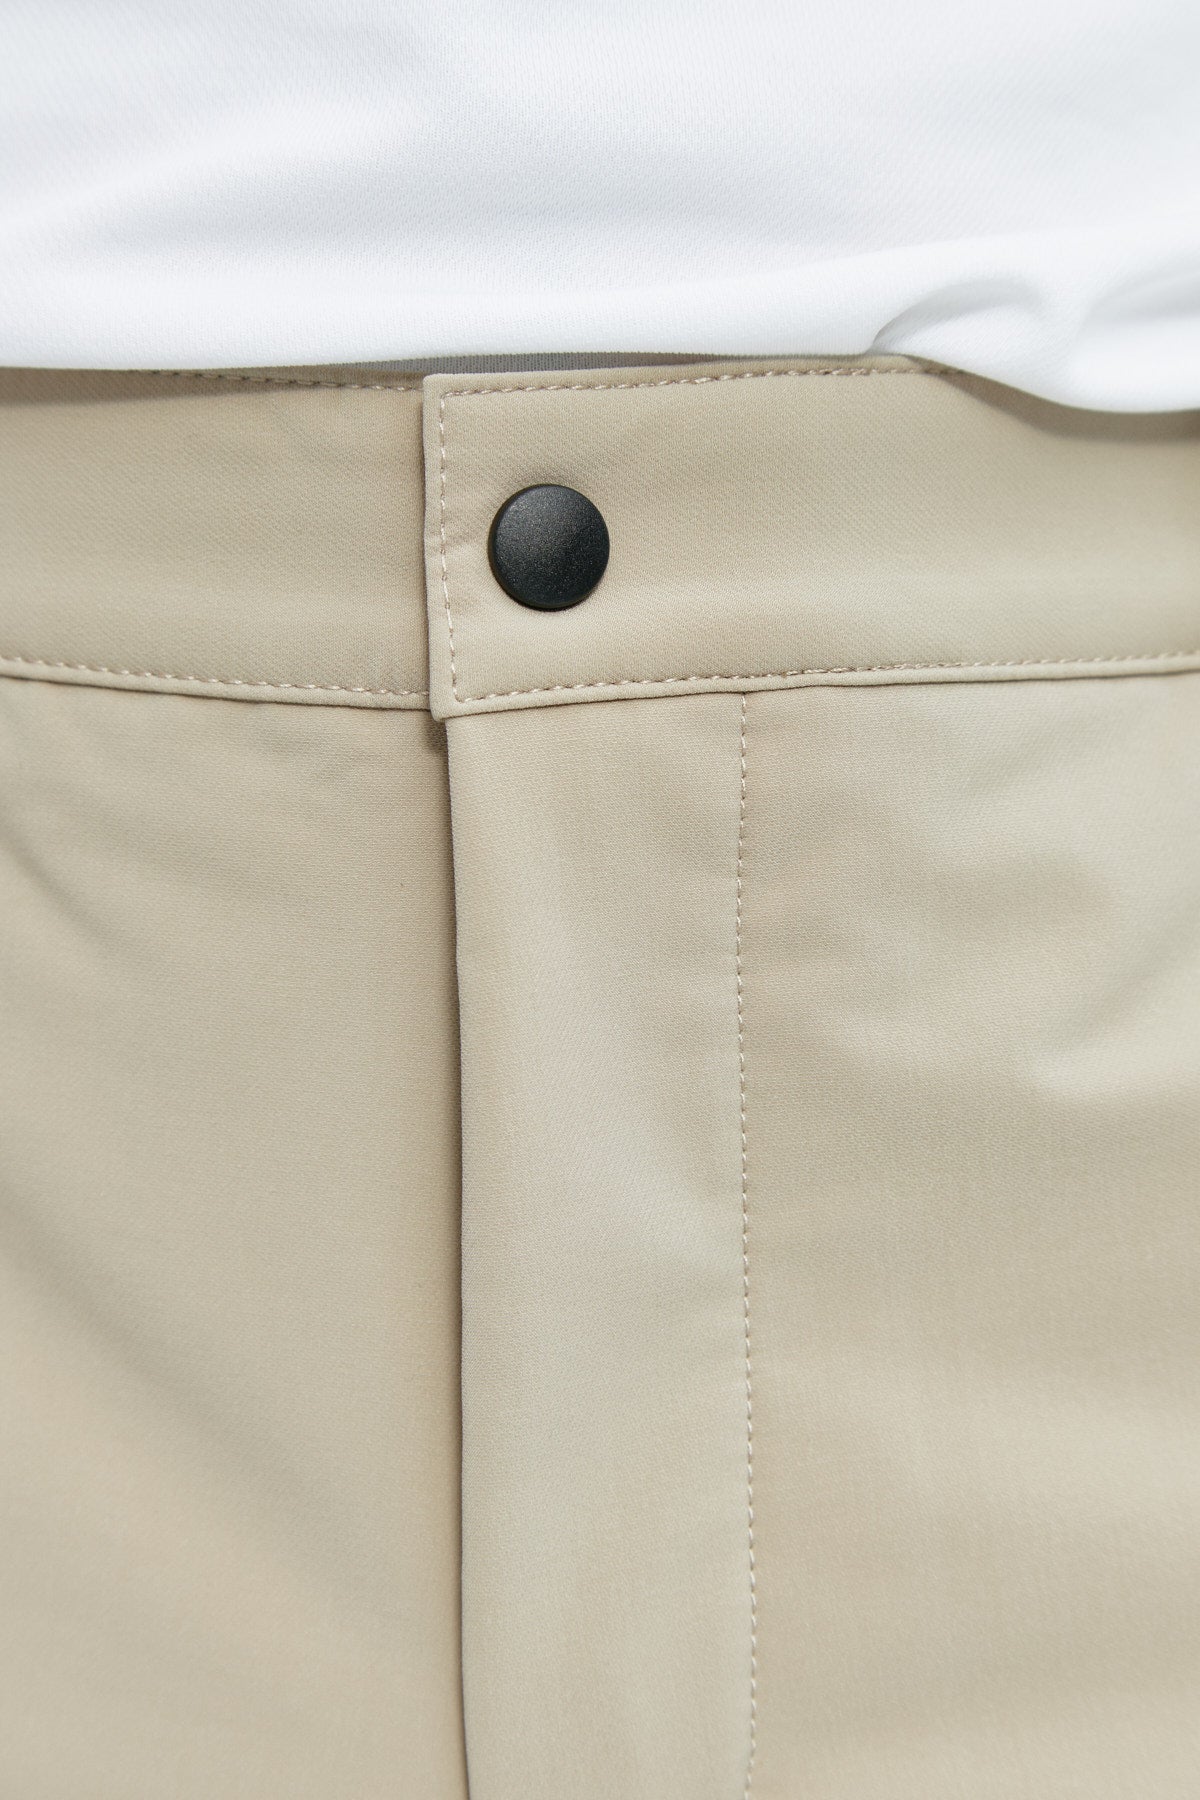 Pantalón chino regular beige para hombre con tecnología termorreguladora Coolmax. Foto detalle